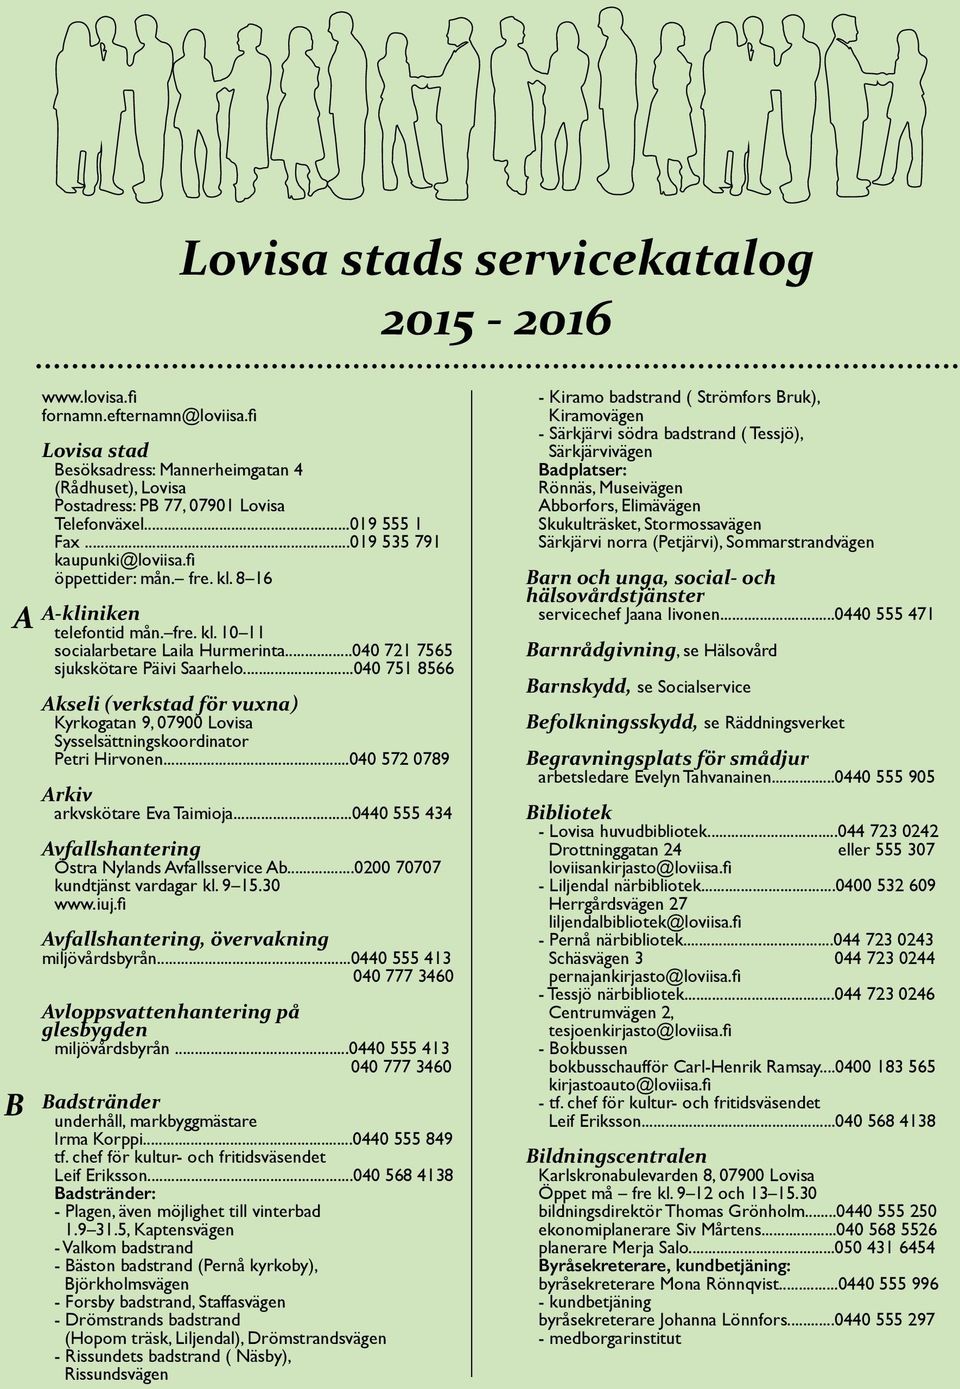 ..040 751 8566 Akseli (verkstad för vuxna) Kyrkogatan 9, 07900 Lovisa Sysselsättningskoordinator Petri Hirvonen...040 572 0789 Arkiv arkvskötare Eva Taimioja.